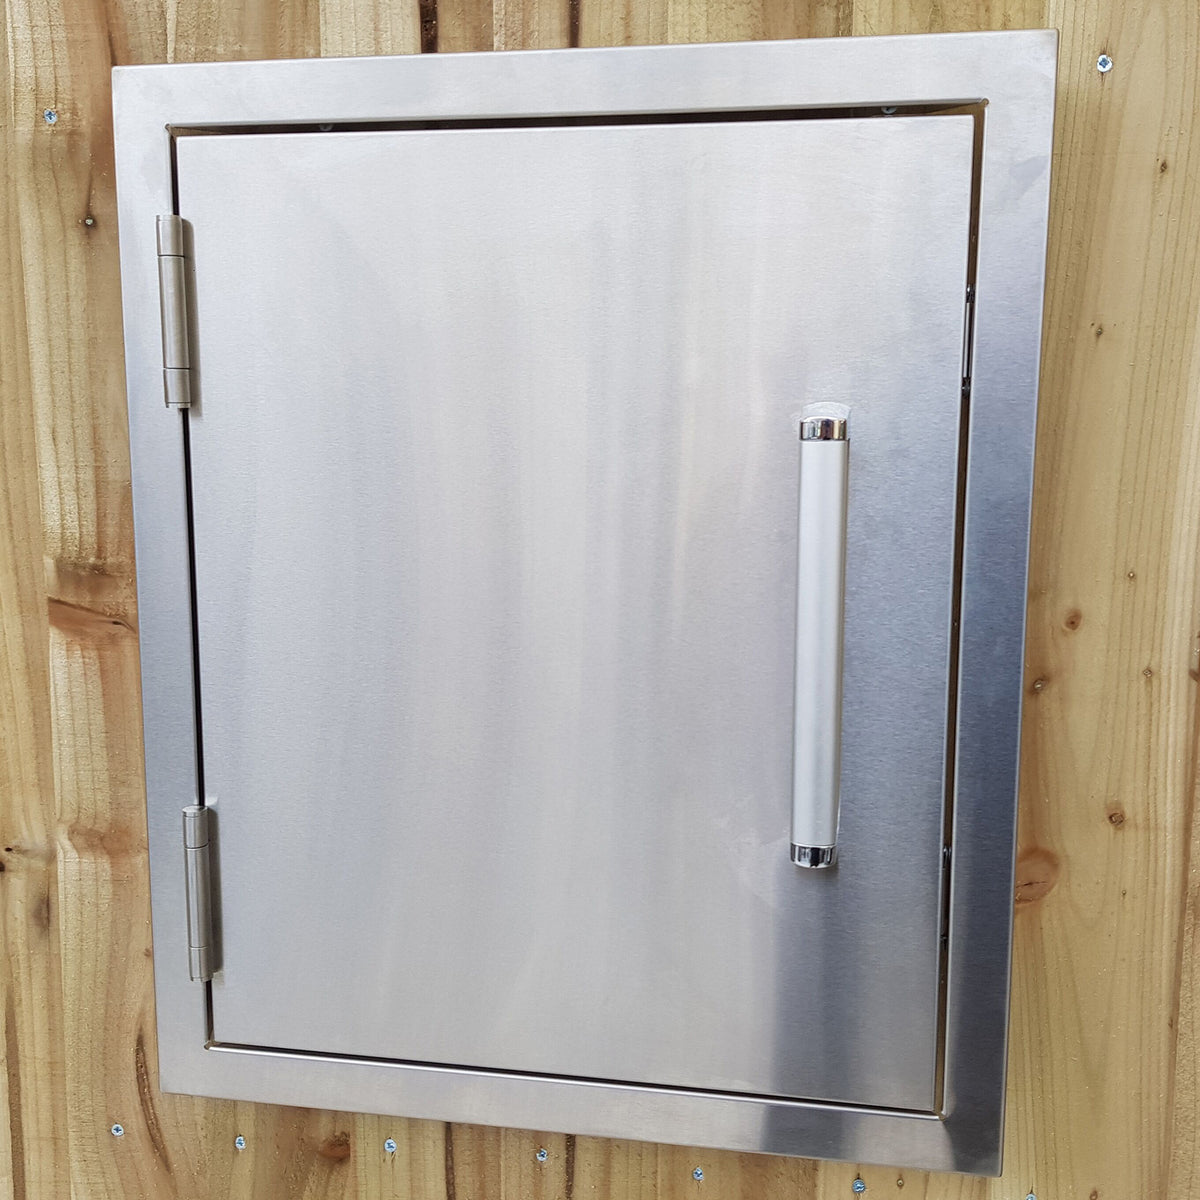 Draco Grills Stainless Steel Build-in Outdoor Kitchen Single Door